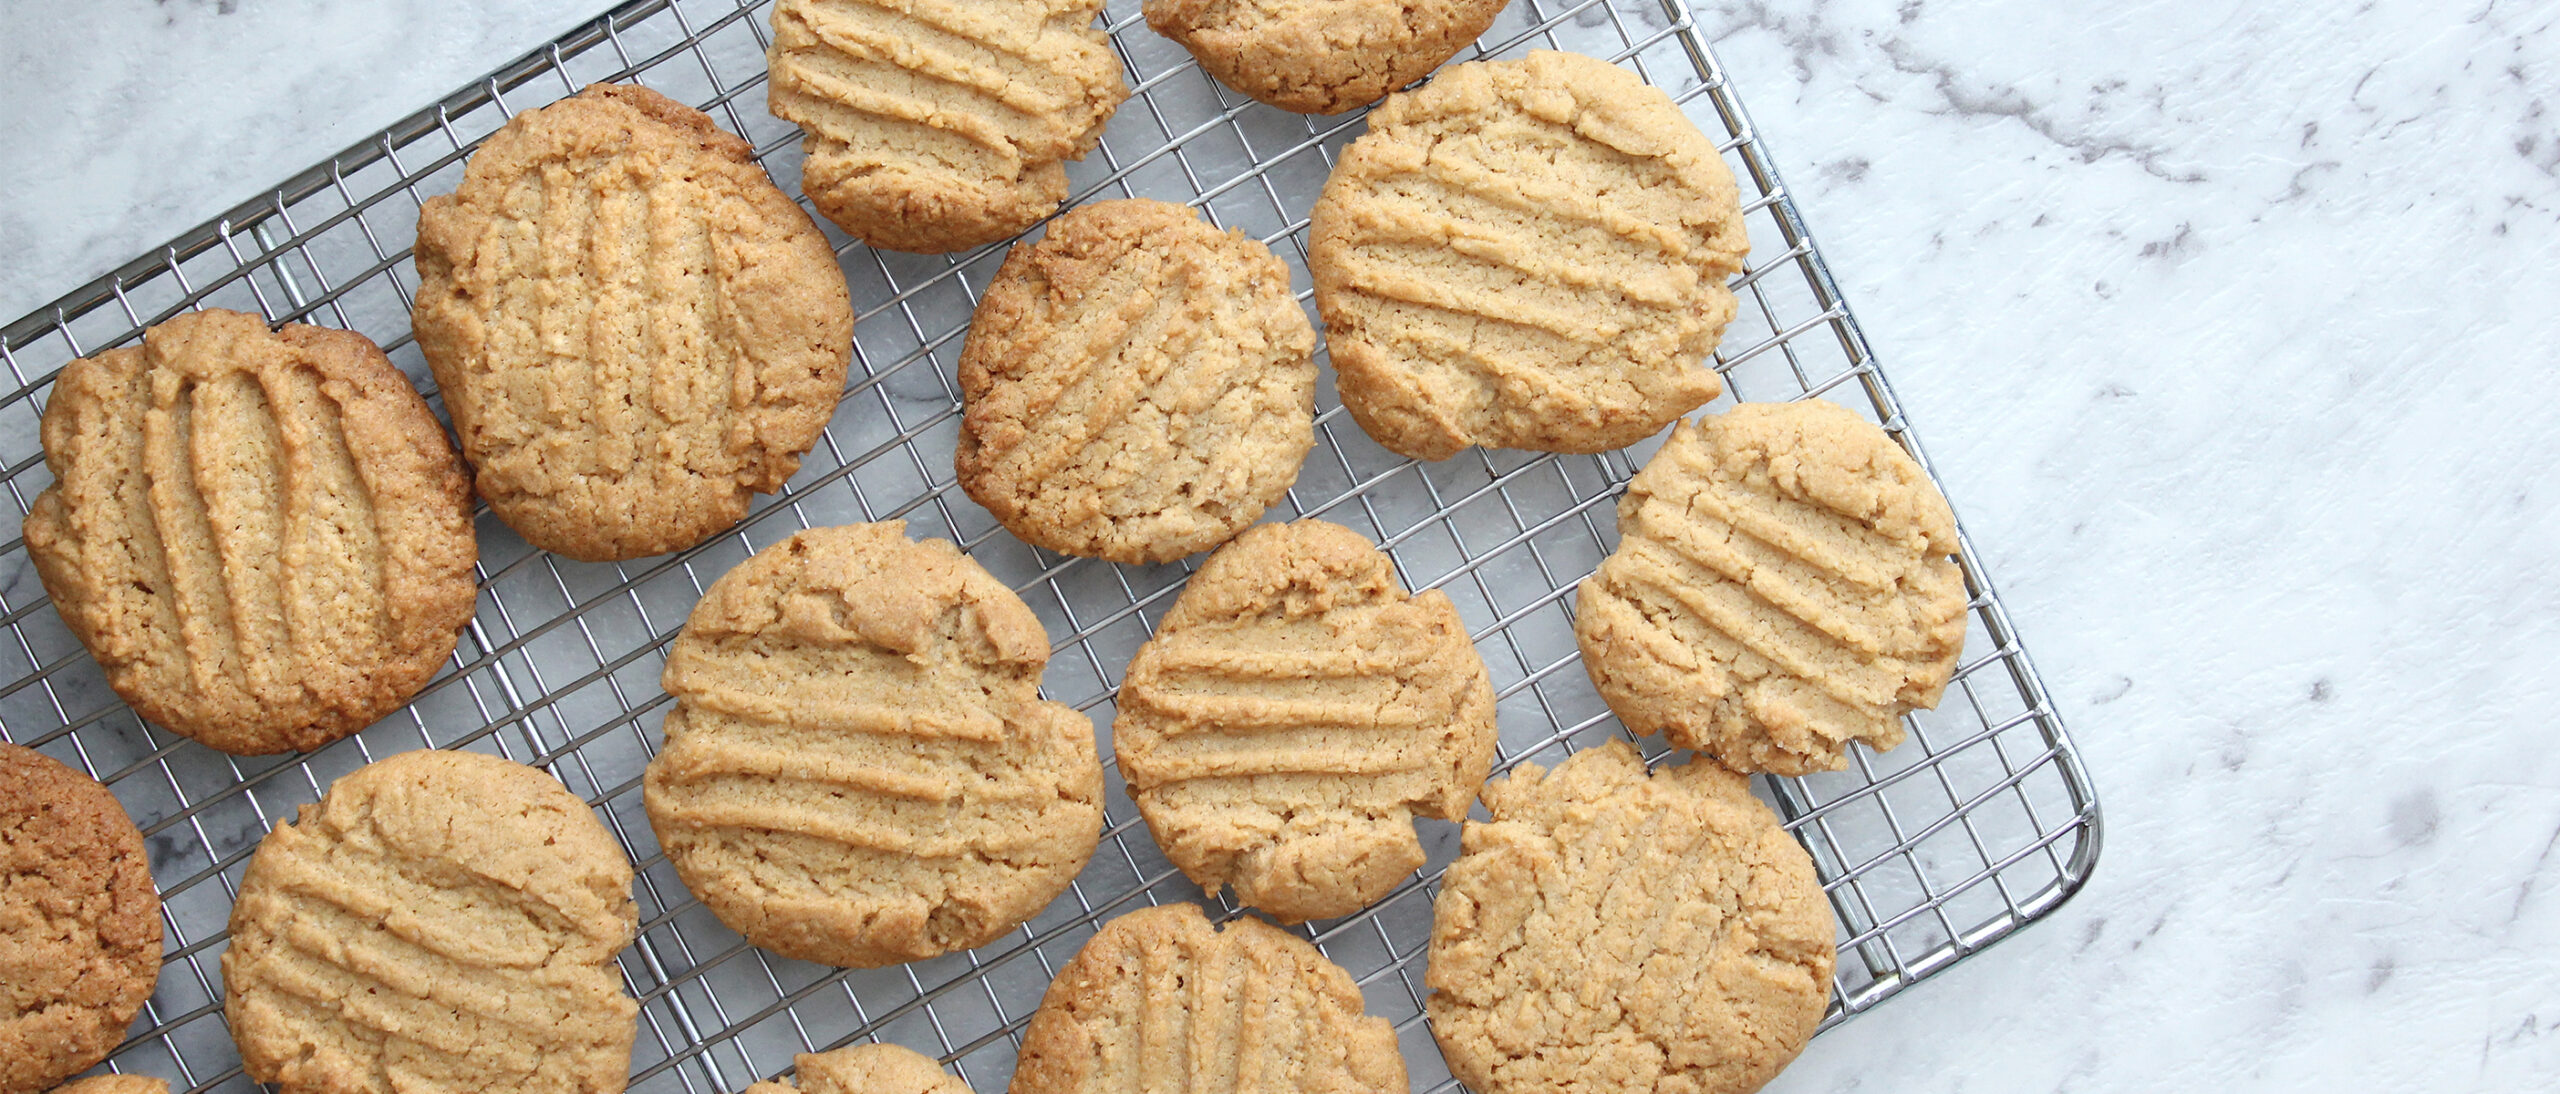 How To Make Kraft Peanut Butter Cookies - Flipp Tipps